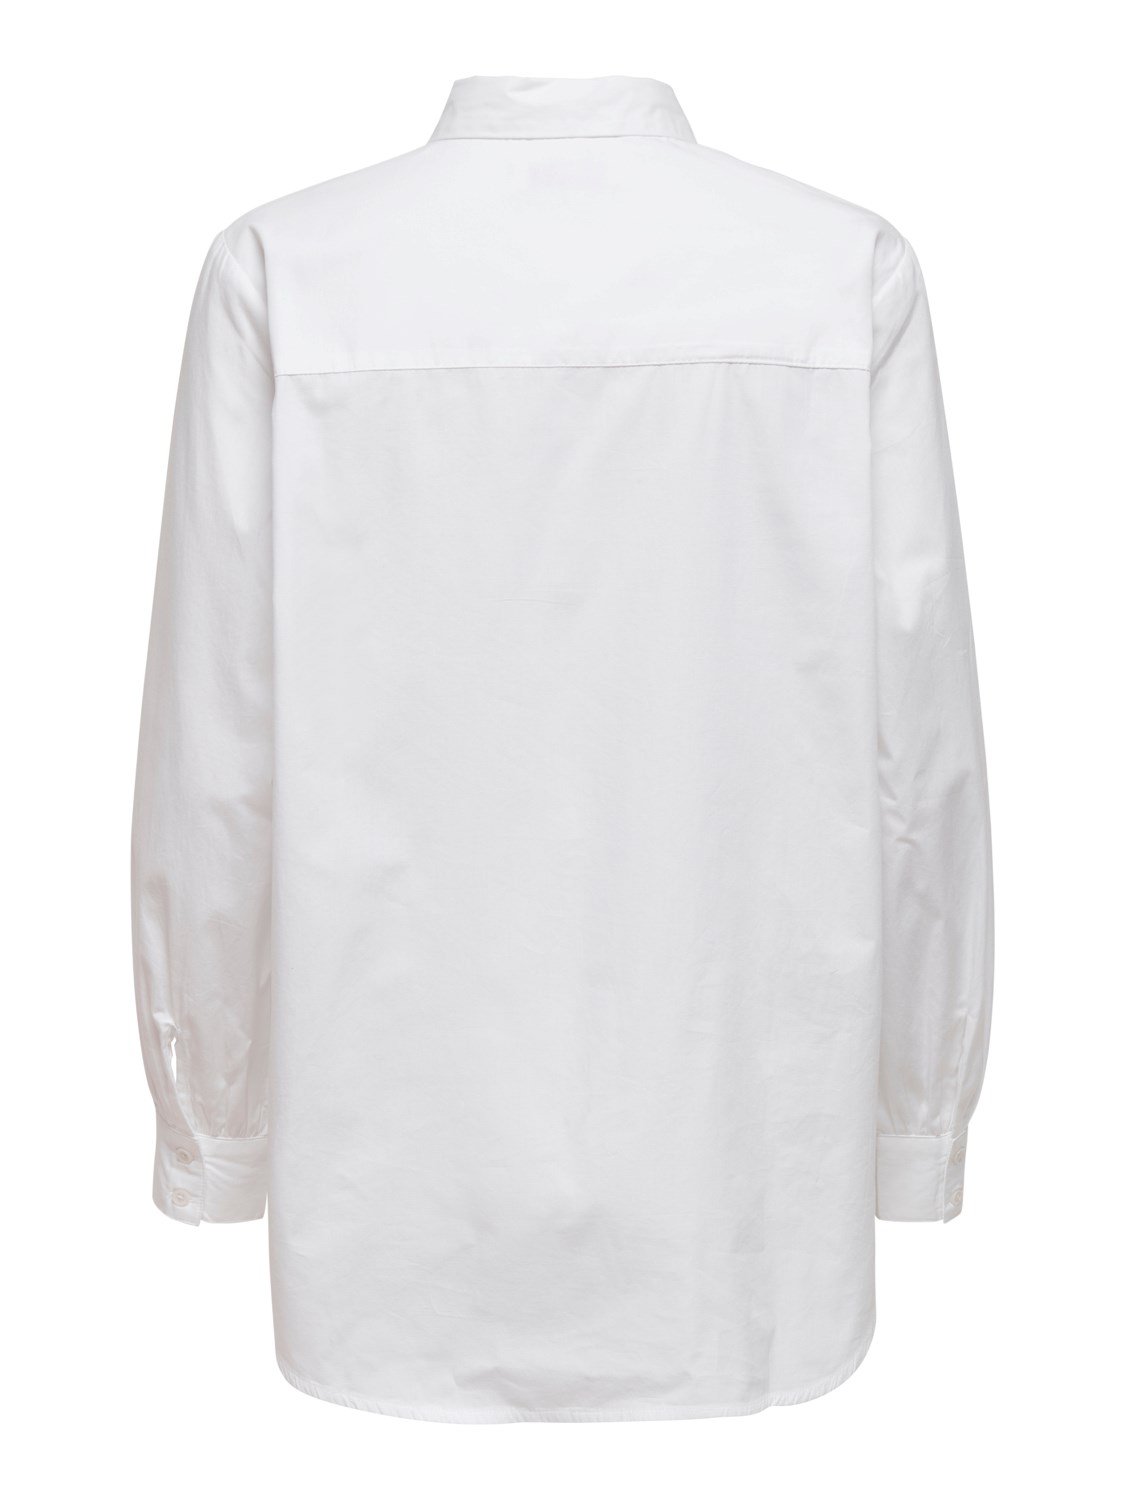 Nora white shirt